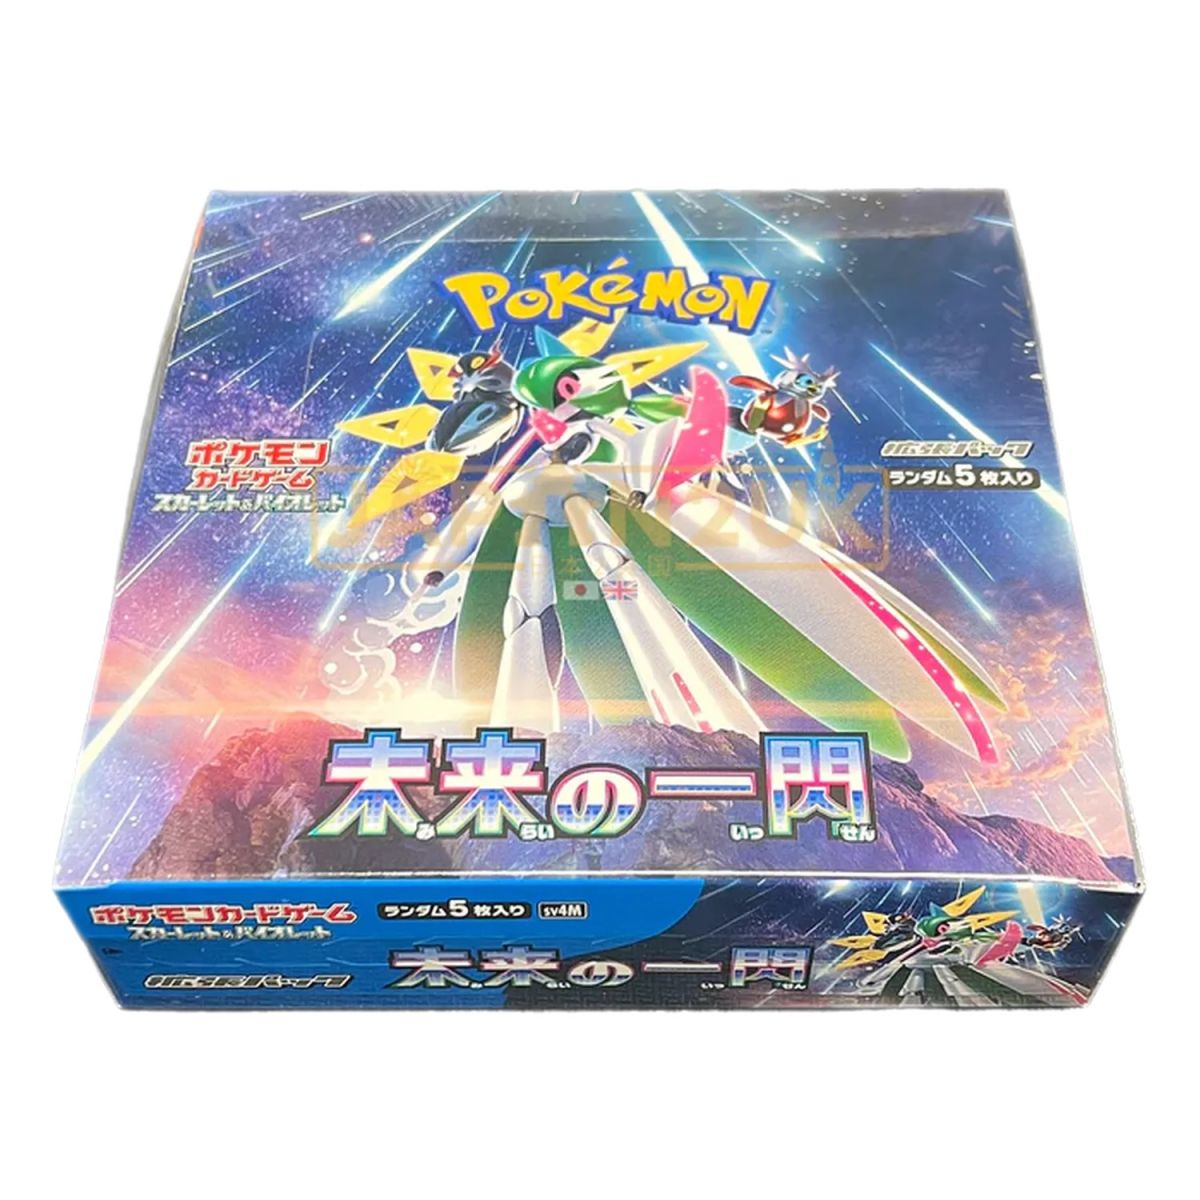 Item Pokémon – Box mit 30 Boostern – Future Flash [SV4M] – JP